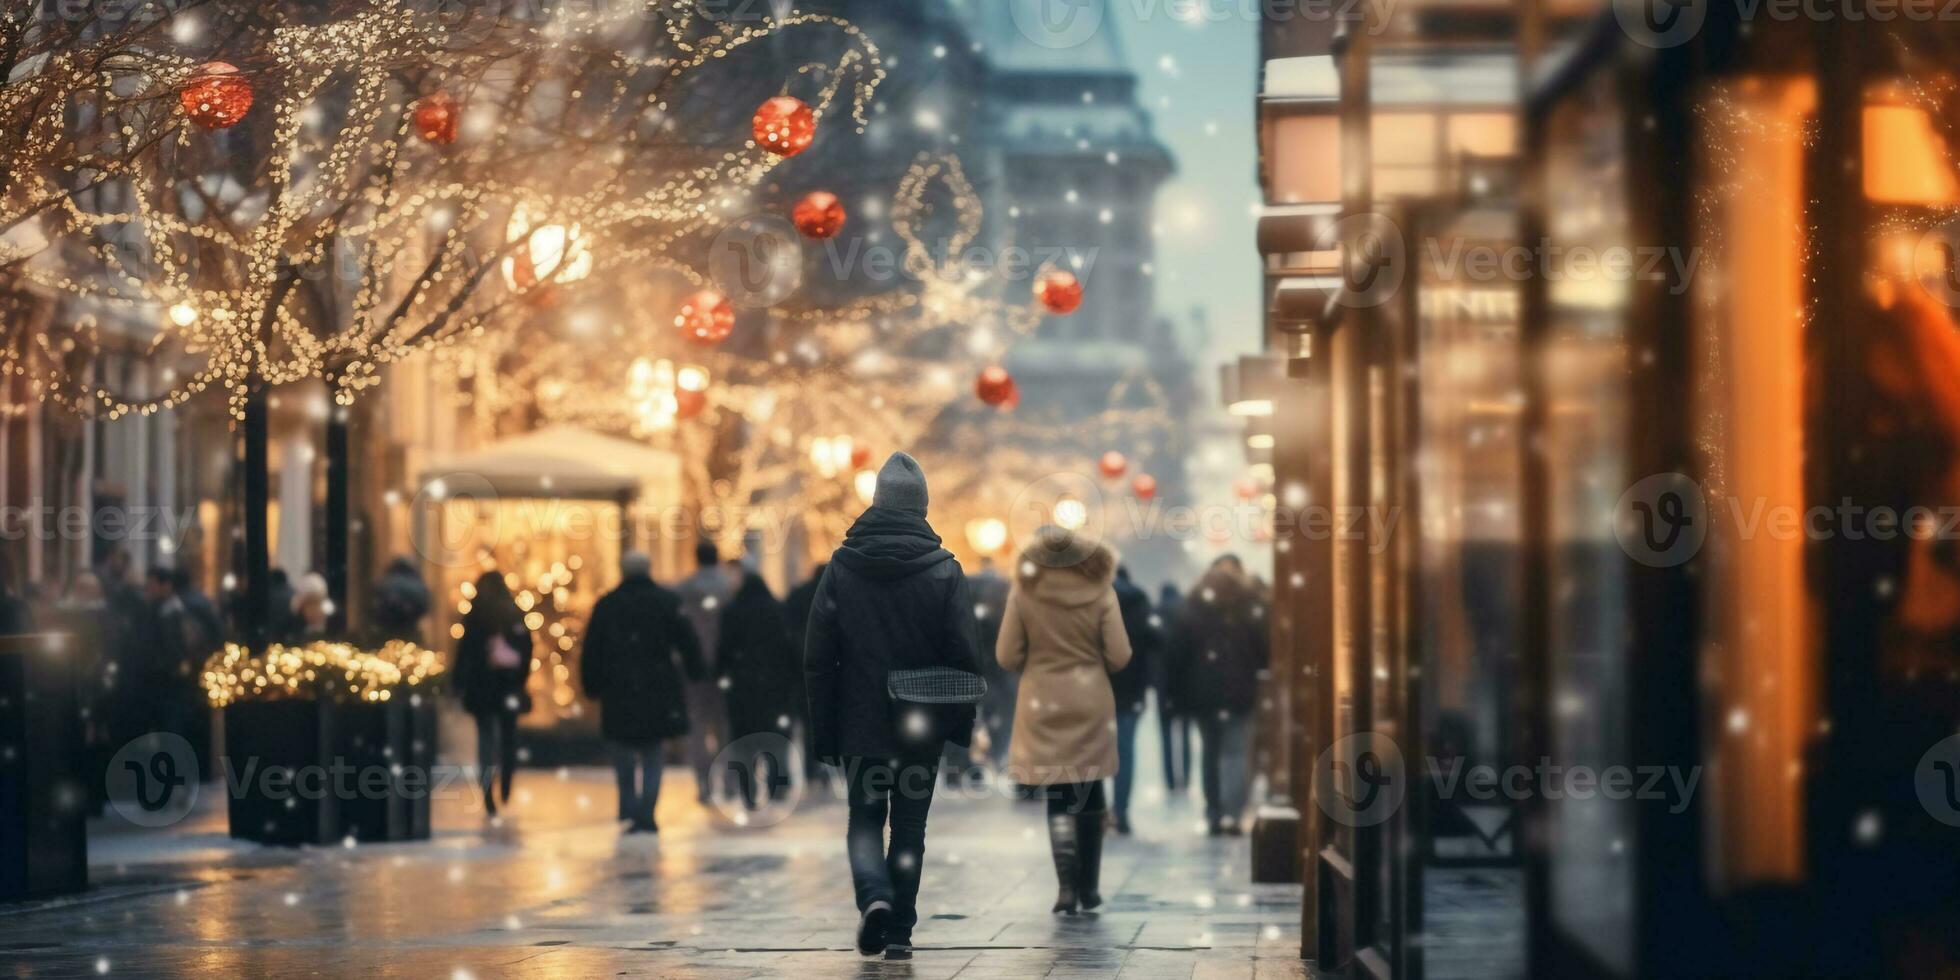 beweging wazig straat visie en beweging wazig prople wandelen langs de straat in winter seizoen, winter Kerstmis markt foto